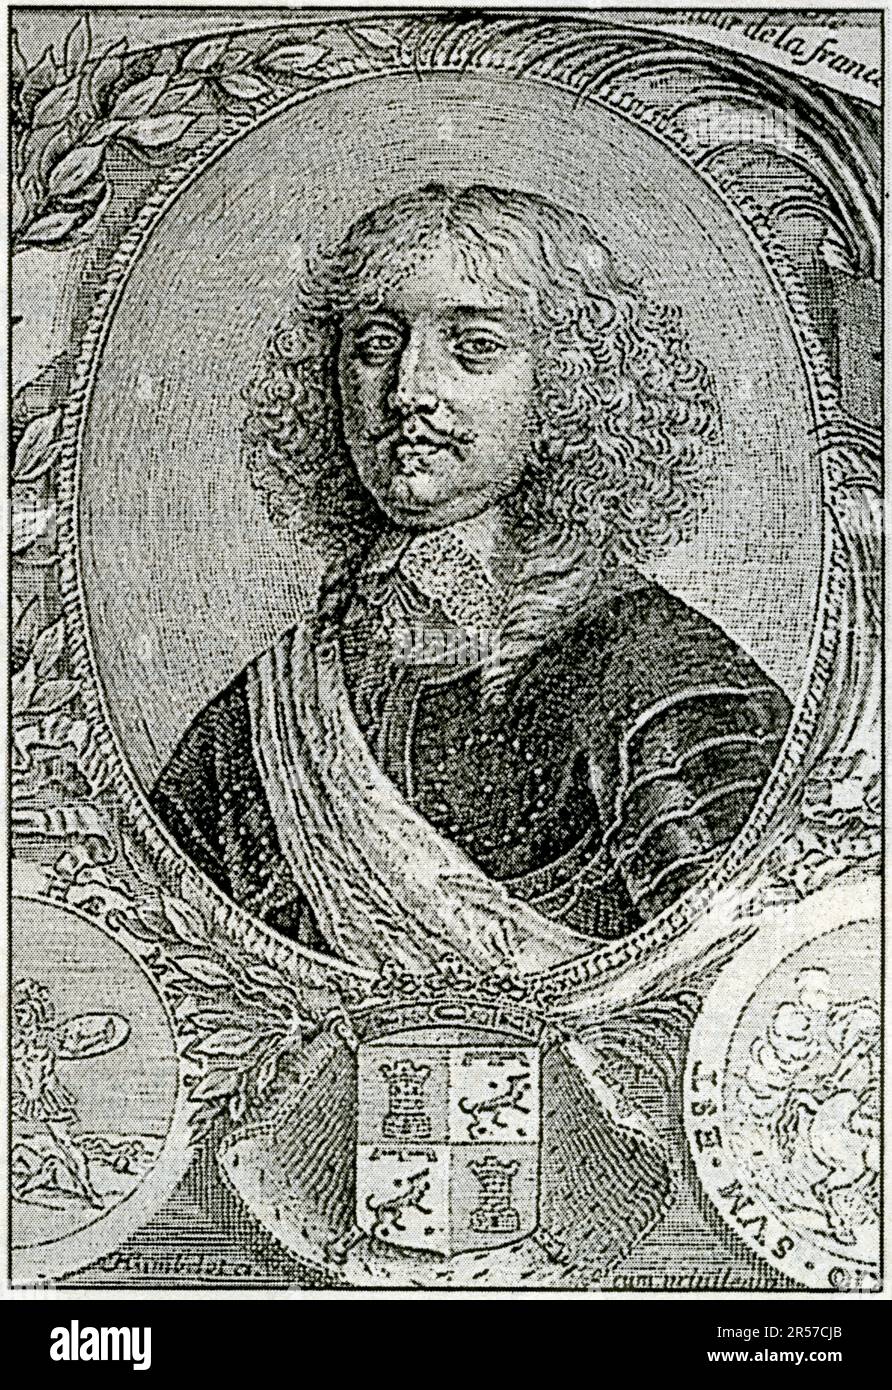 Le Maréchal de la Mothe-Houdancourt, 1605-1657, commanda l'armée d'Italie, maréchal de France en 1642. Gravure d'Humblot. Foto Stock